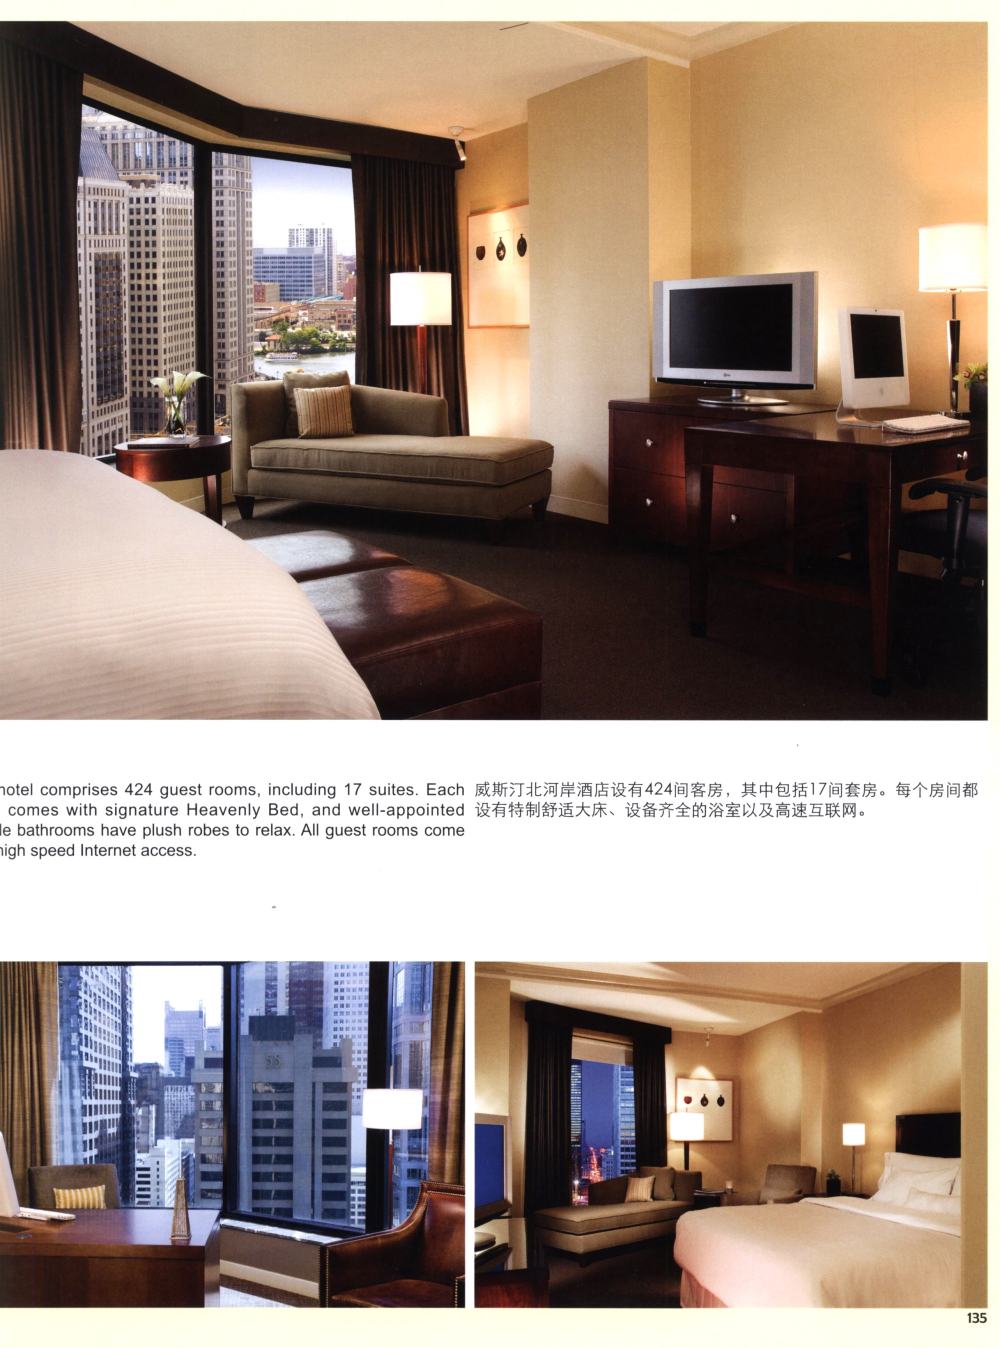 101全球奢华酒店客房_客房_001 (130).jpg